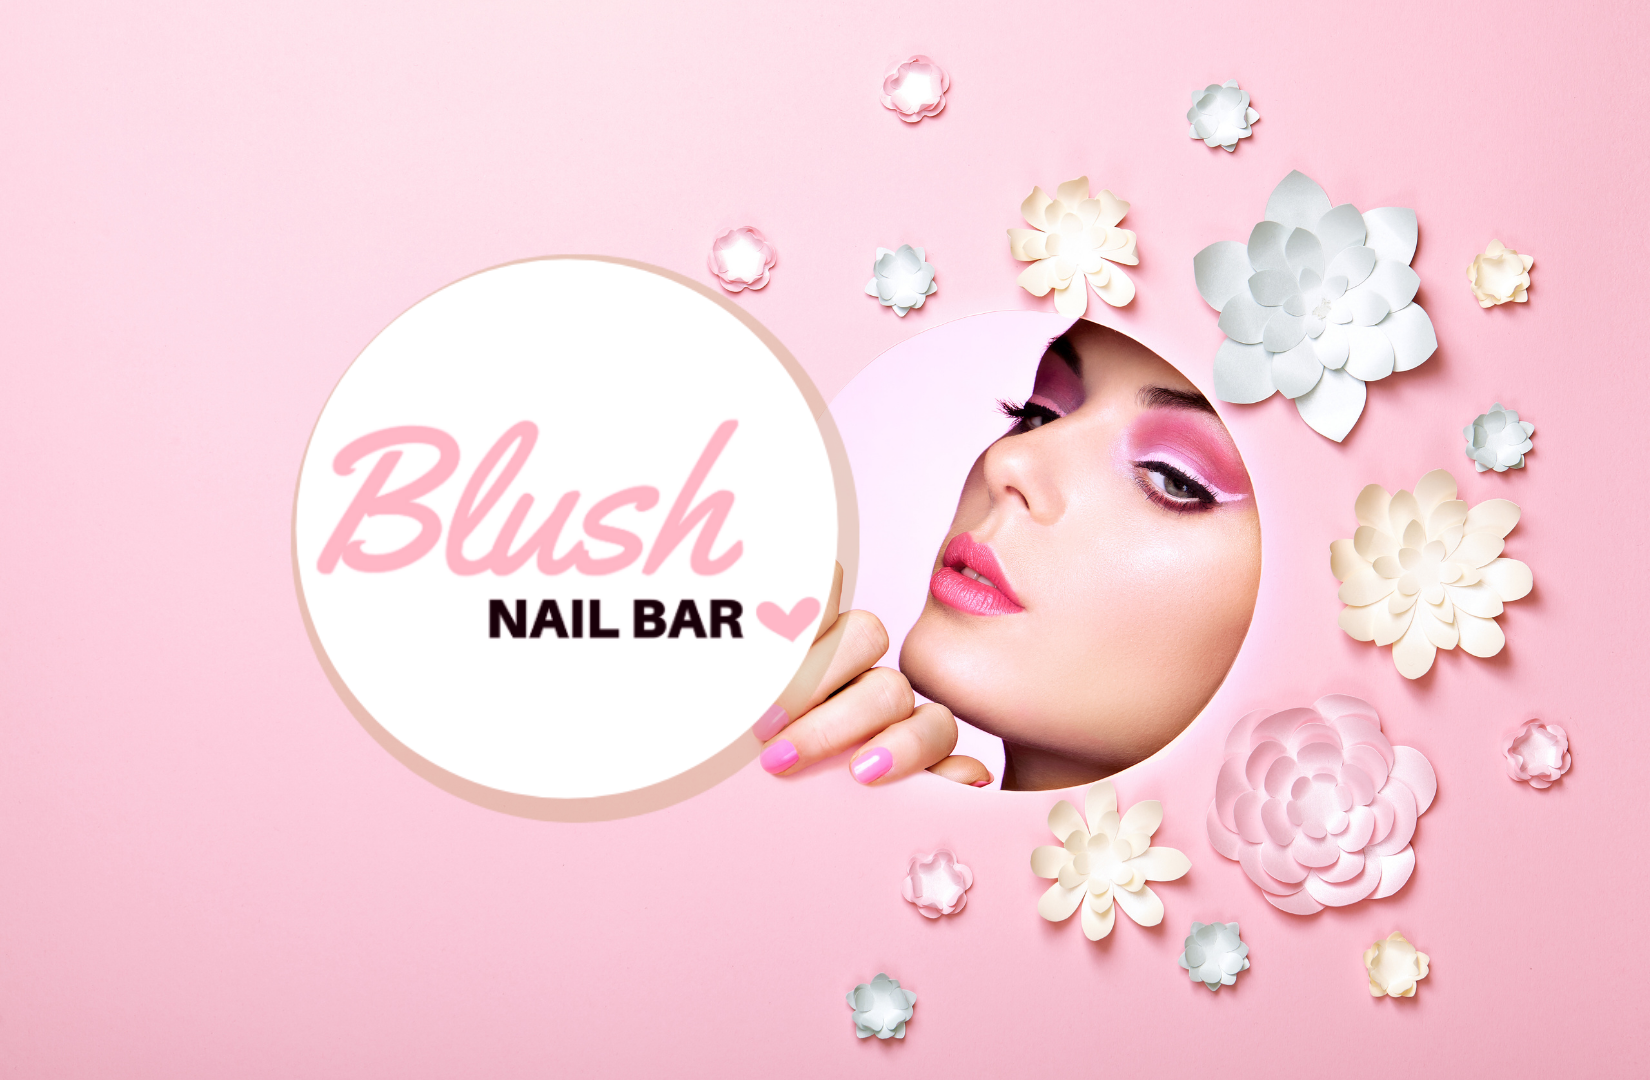 Blush Nail Bar - wide 5